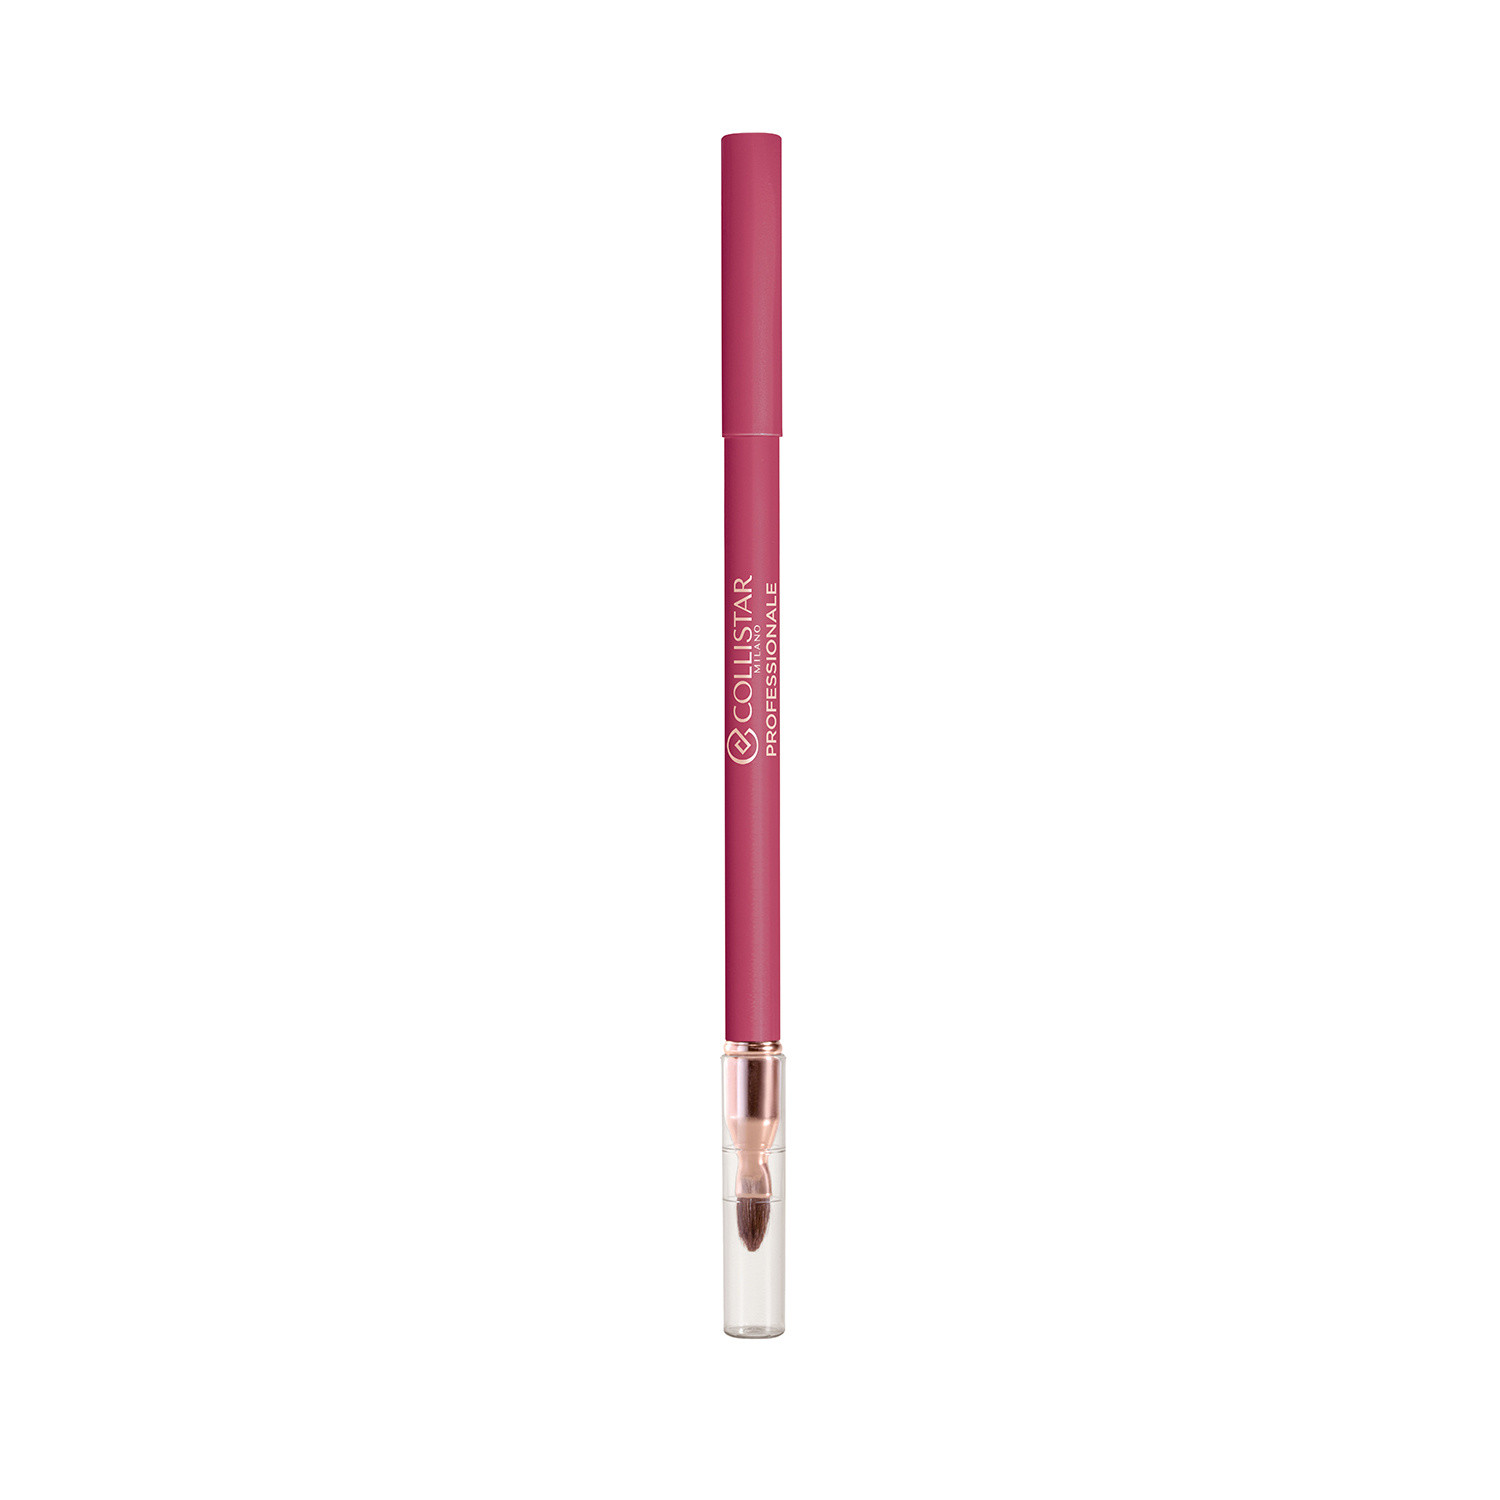 Collistar - Professionale matita labbra lunga durata - 113 Autumn Berry, Rosa fenicottero, large image number 0